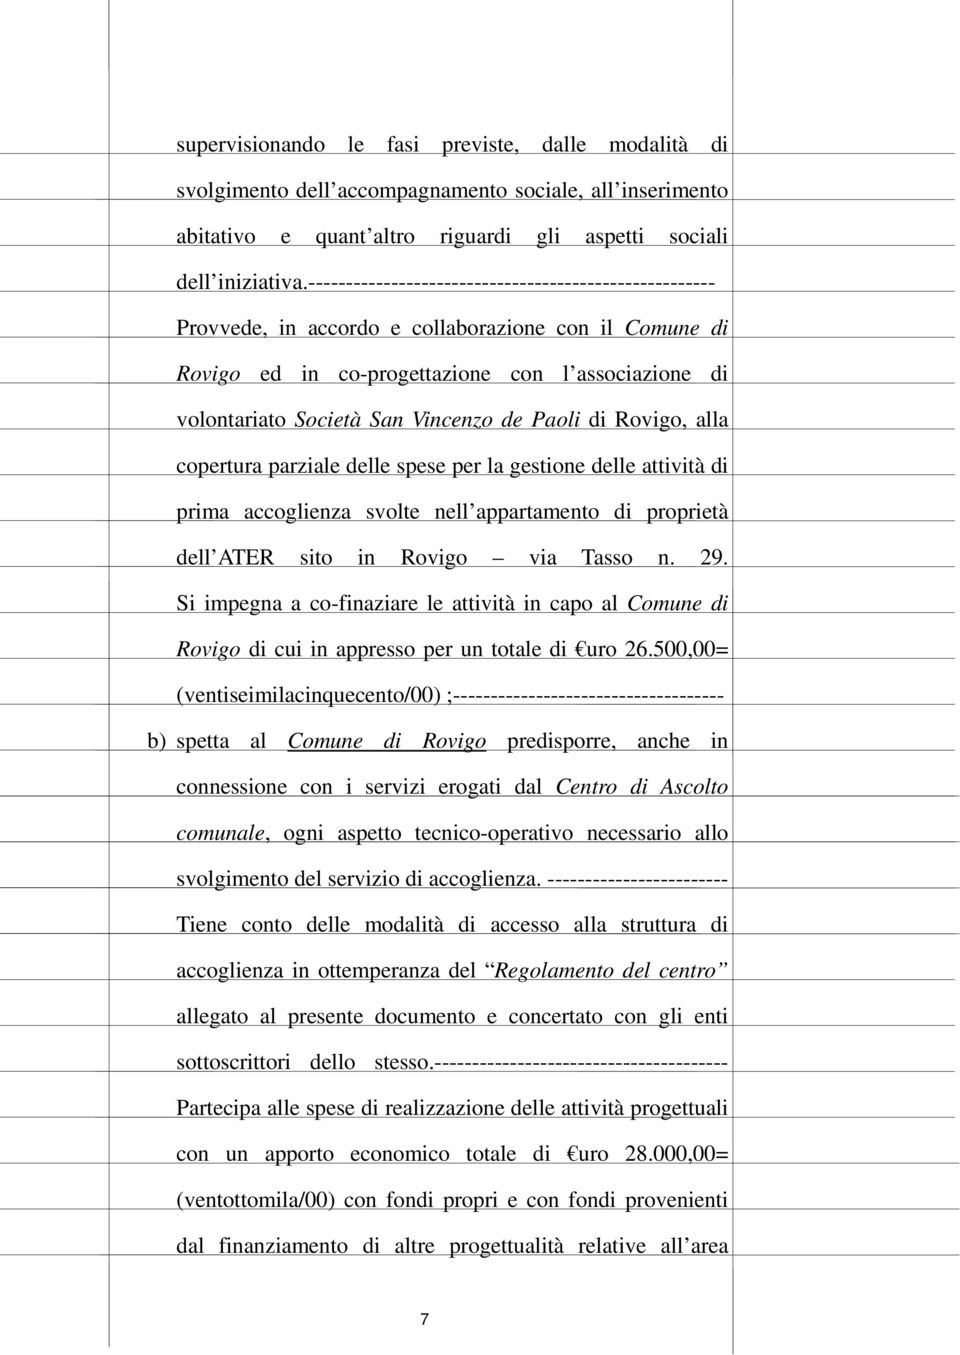 Paoli di Rovigo, alla copertura parziale delle spese per la gestione delle attività di prima accoglienza svolte nell appartamento di proprietà dell ATER sito in Rovigo via Tasso n. 29.